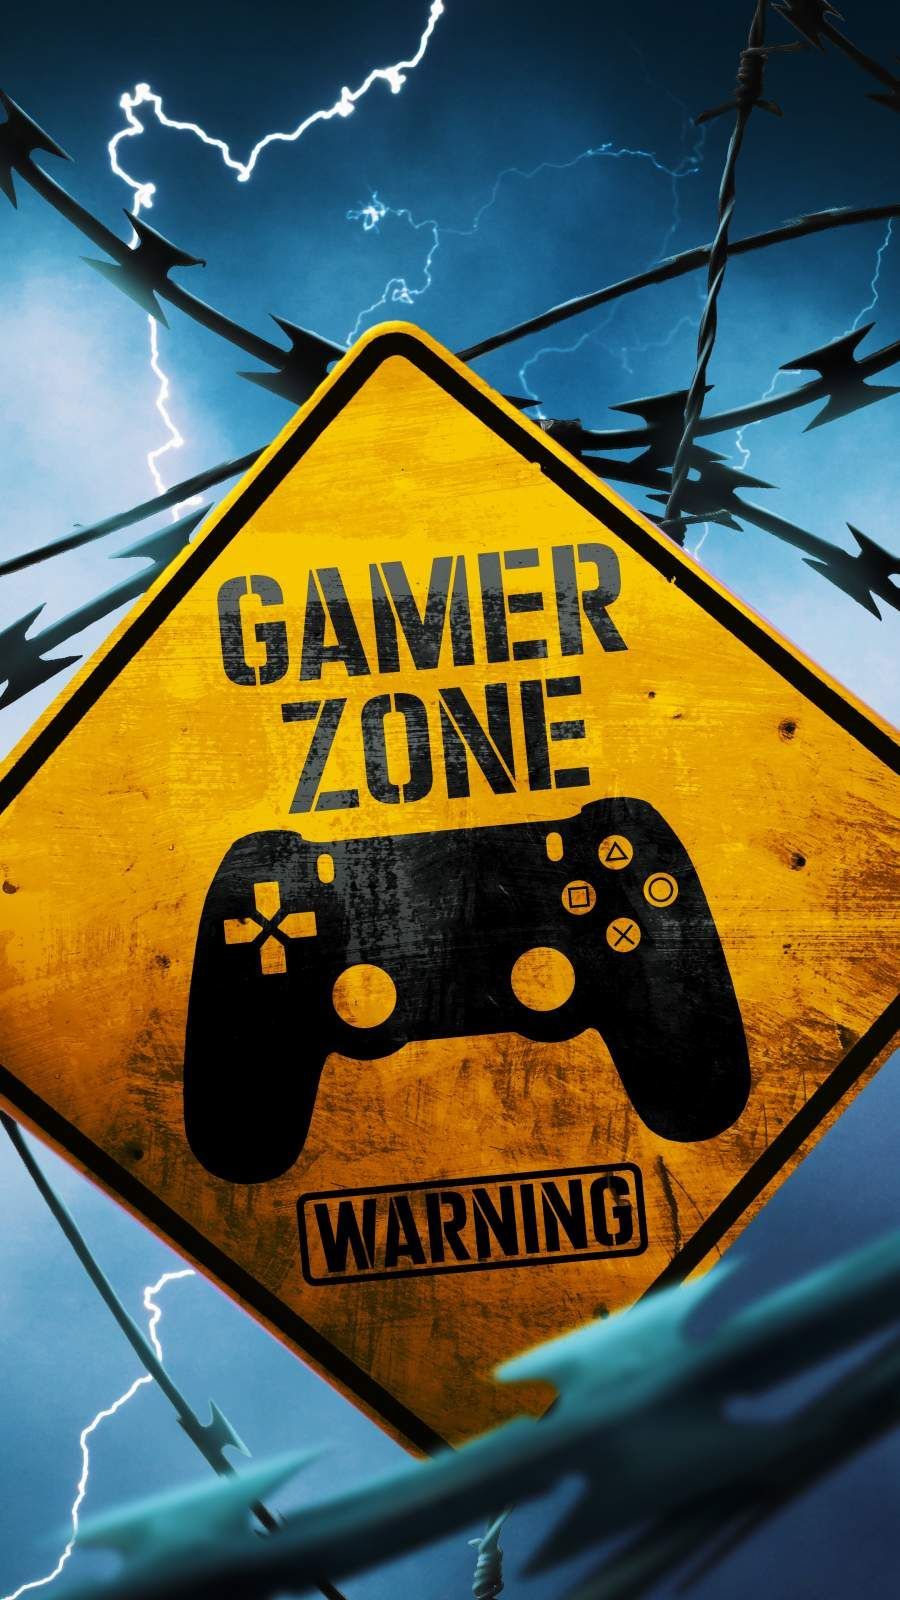 Gamer Zone Warning iPhone Wallpaper. Game wallpaper